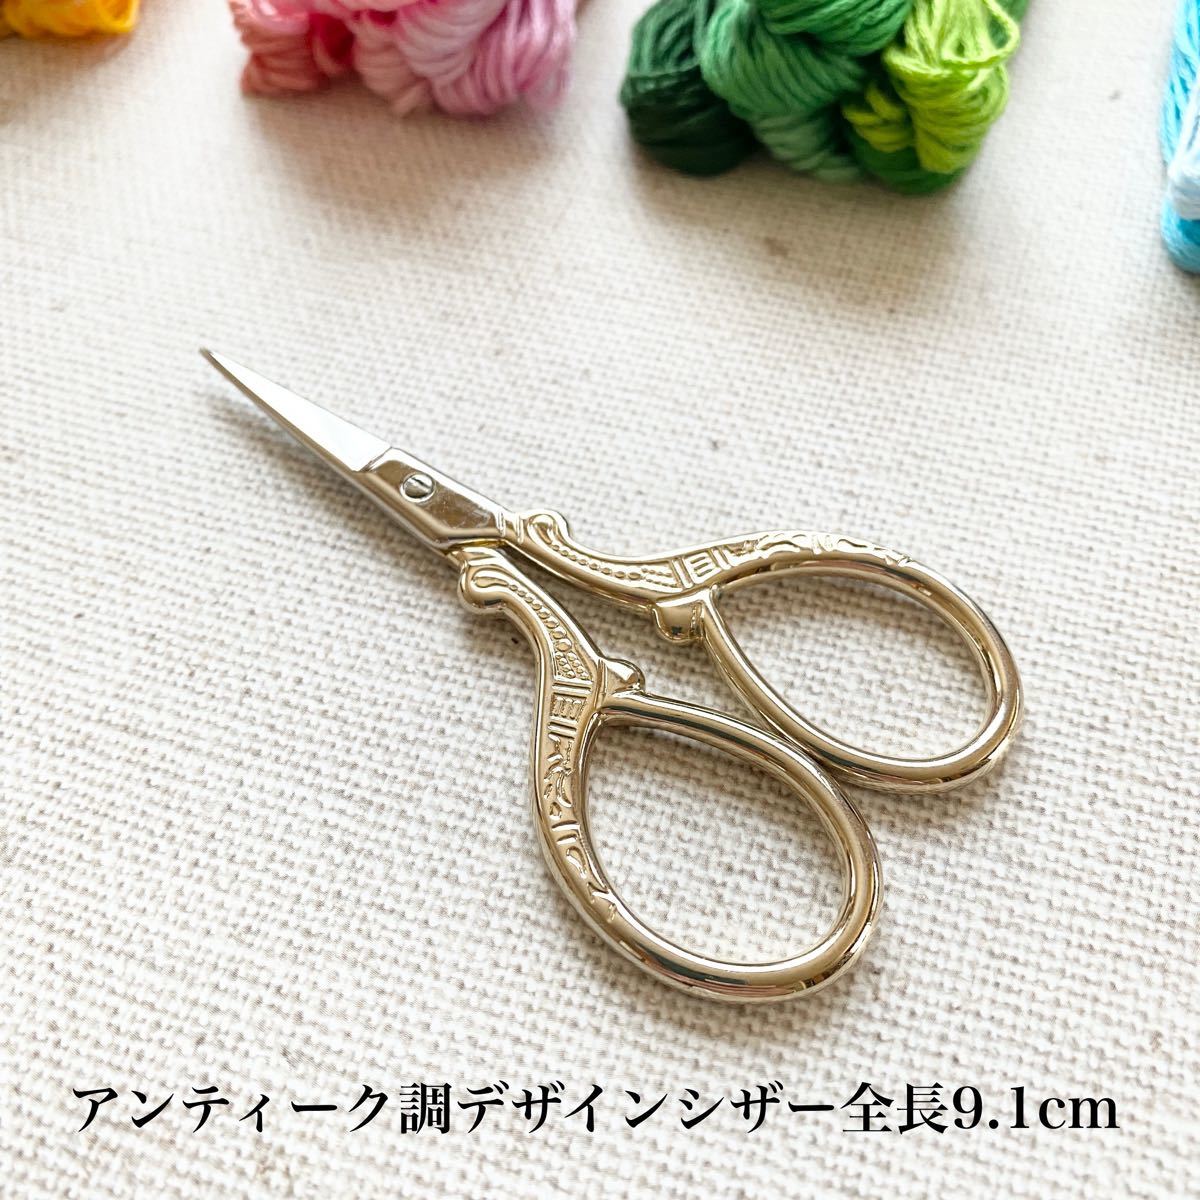 刺繍セットD-3 匿名配送（刺繍糸 98色 刺繍枠 ハサミ リッパー 糸通し 